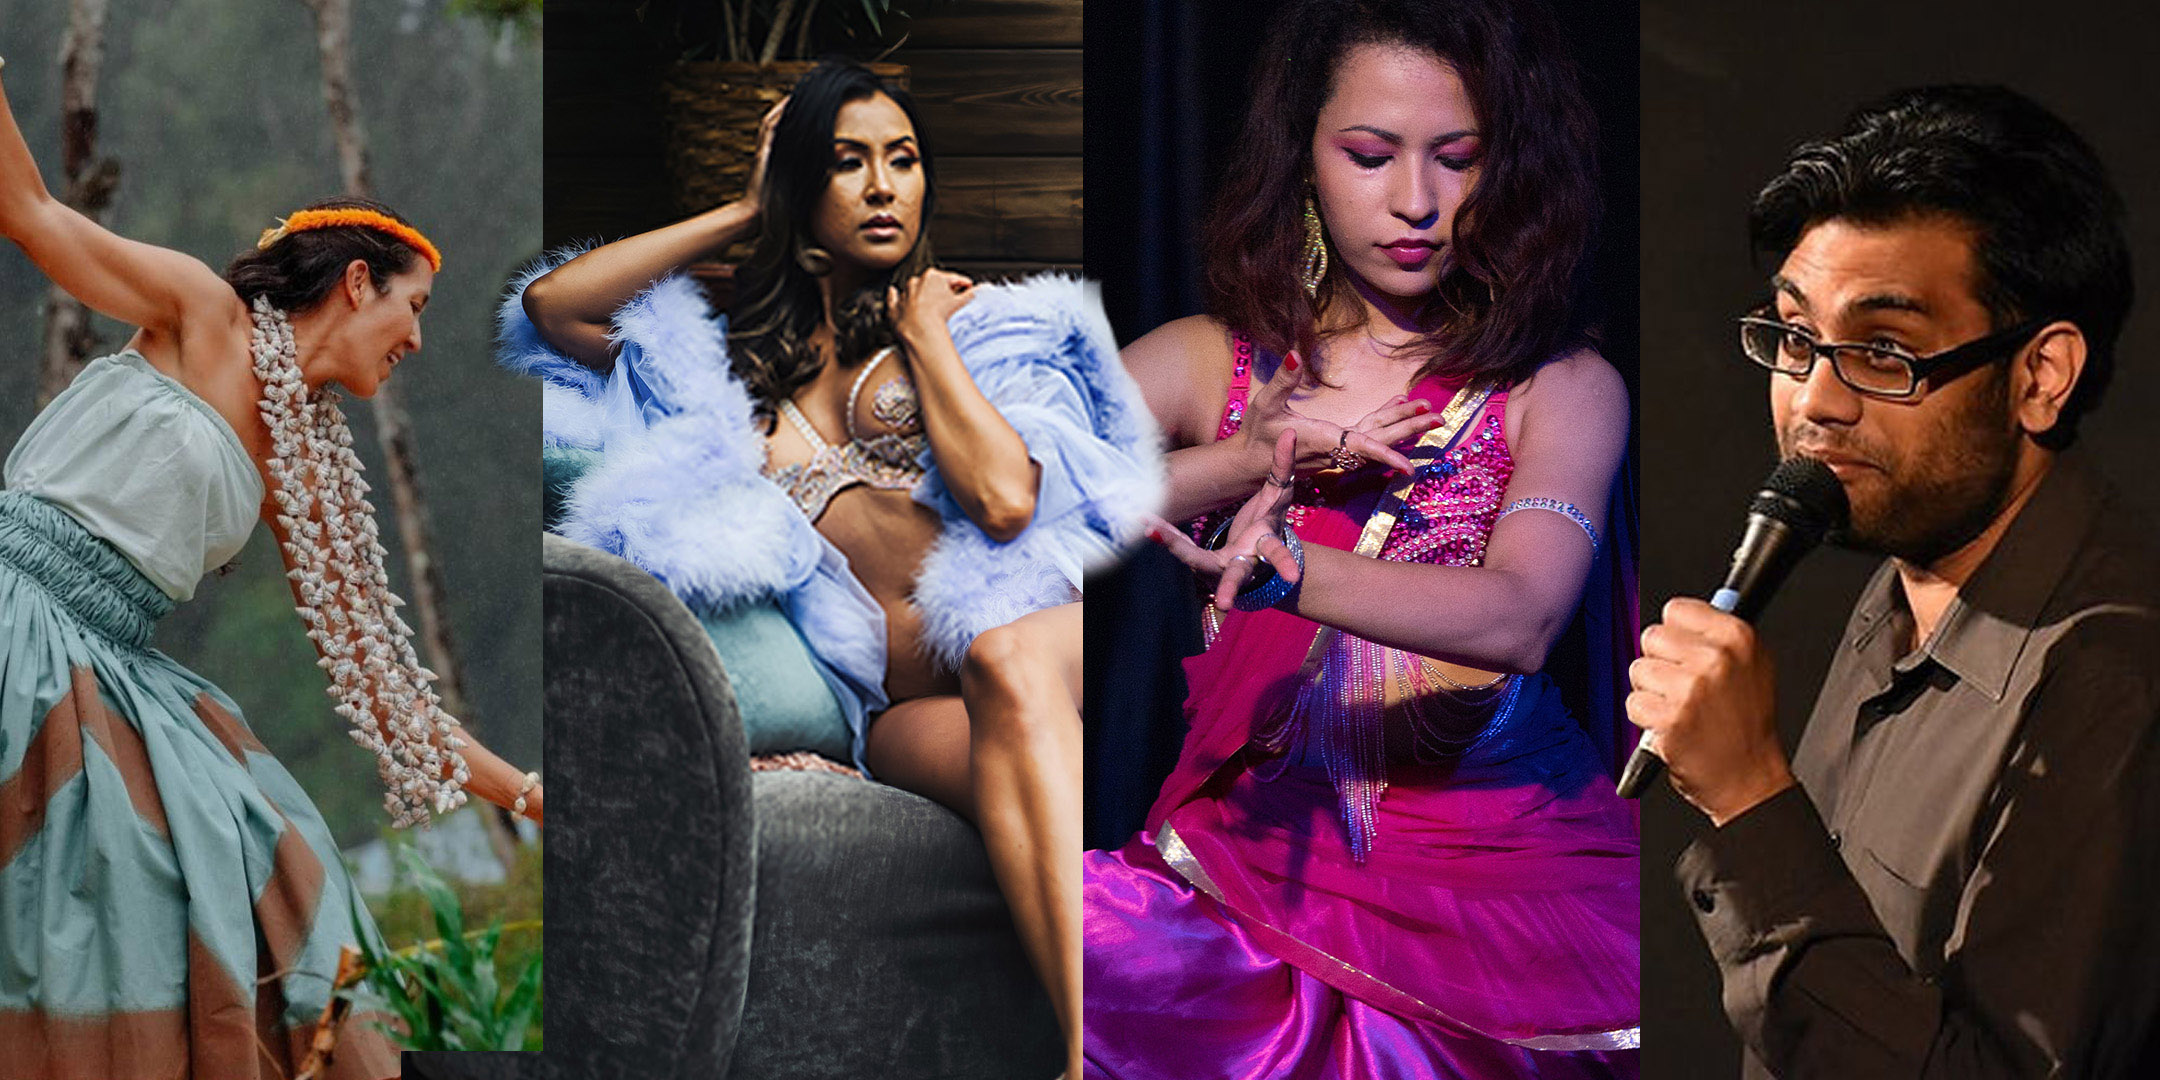 Performers: Hawaiian dancer, mixed Filipina Latina burlesquer, Indian dancer, South Asian comedian